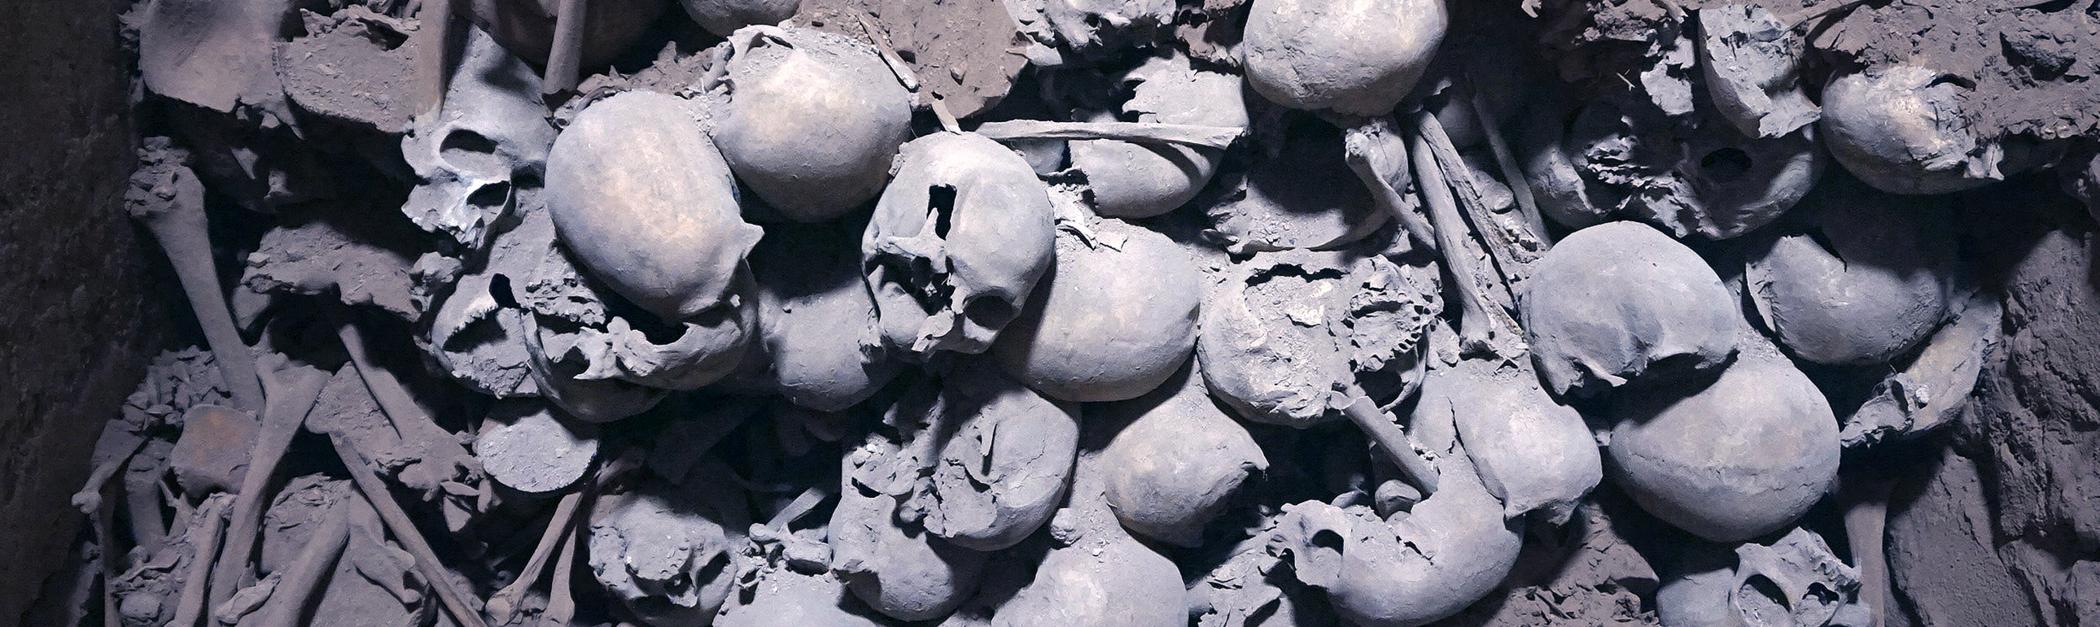 Cráneos en una excavación